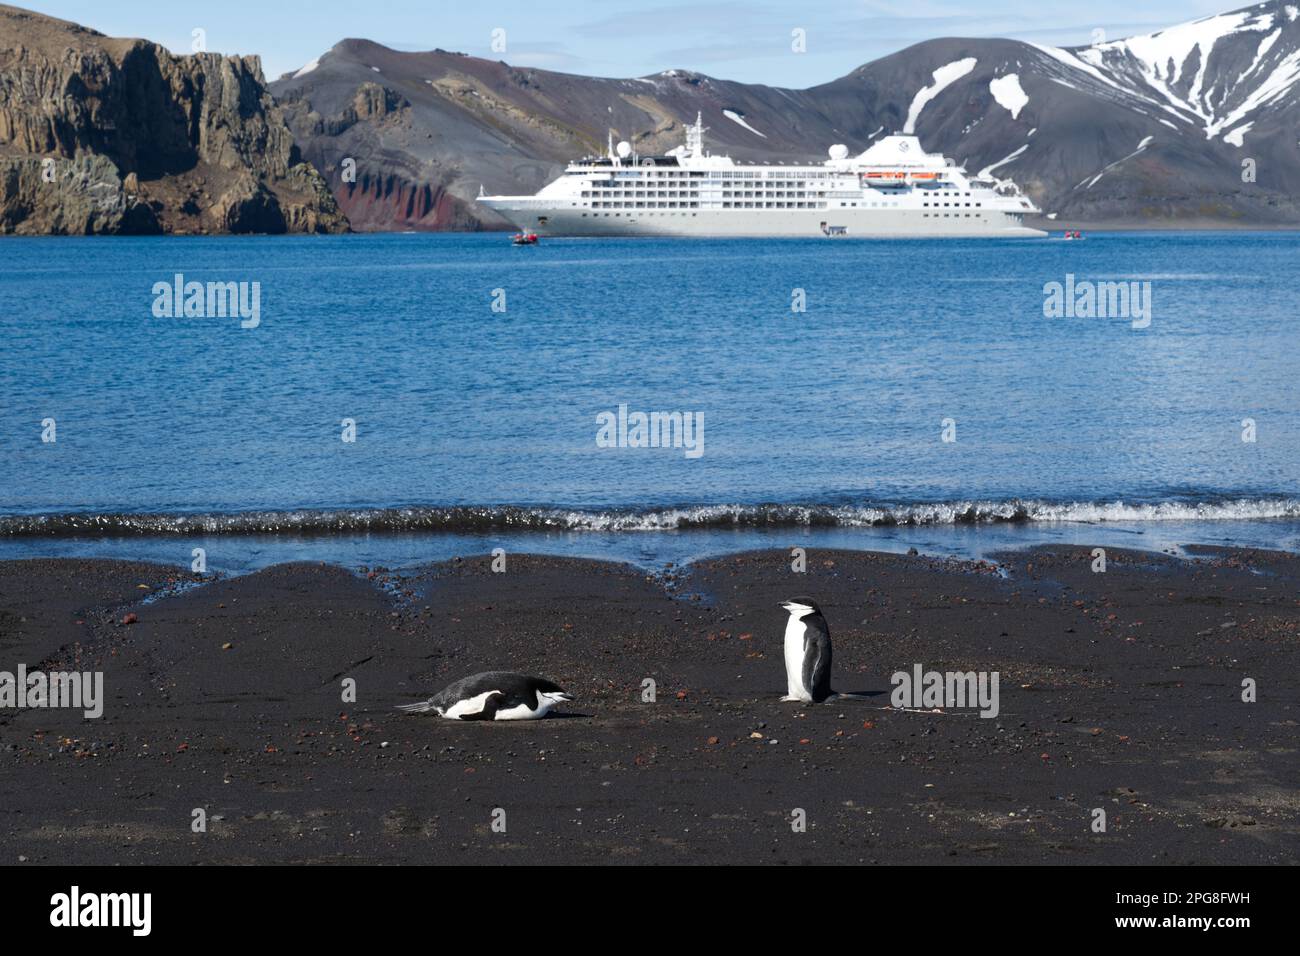 Zwei Chinstrap-Pinguine entspannen sich an einem Strand auf Deception Island (aktiver Vulkan) mit einem Kreuzfahrtschiff in der Bucht - Antarktis Stockfoto